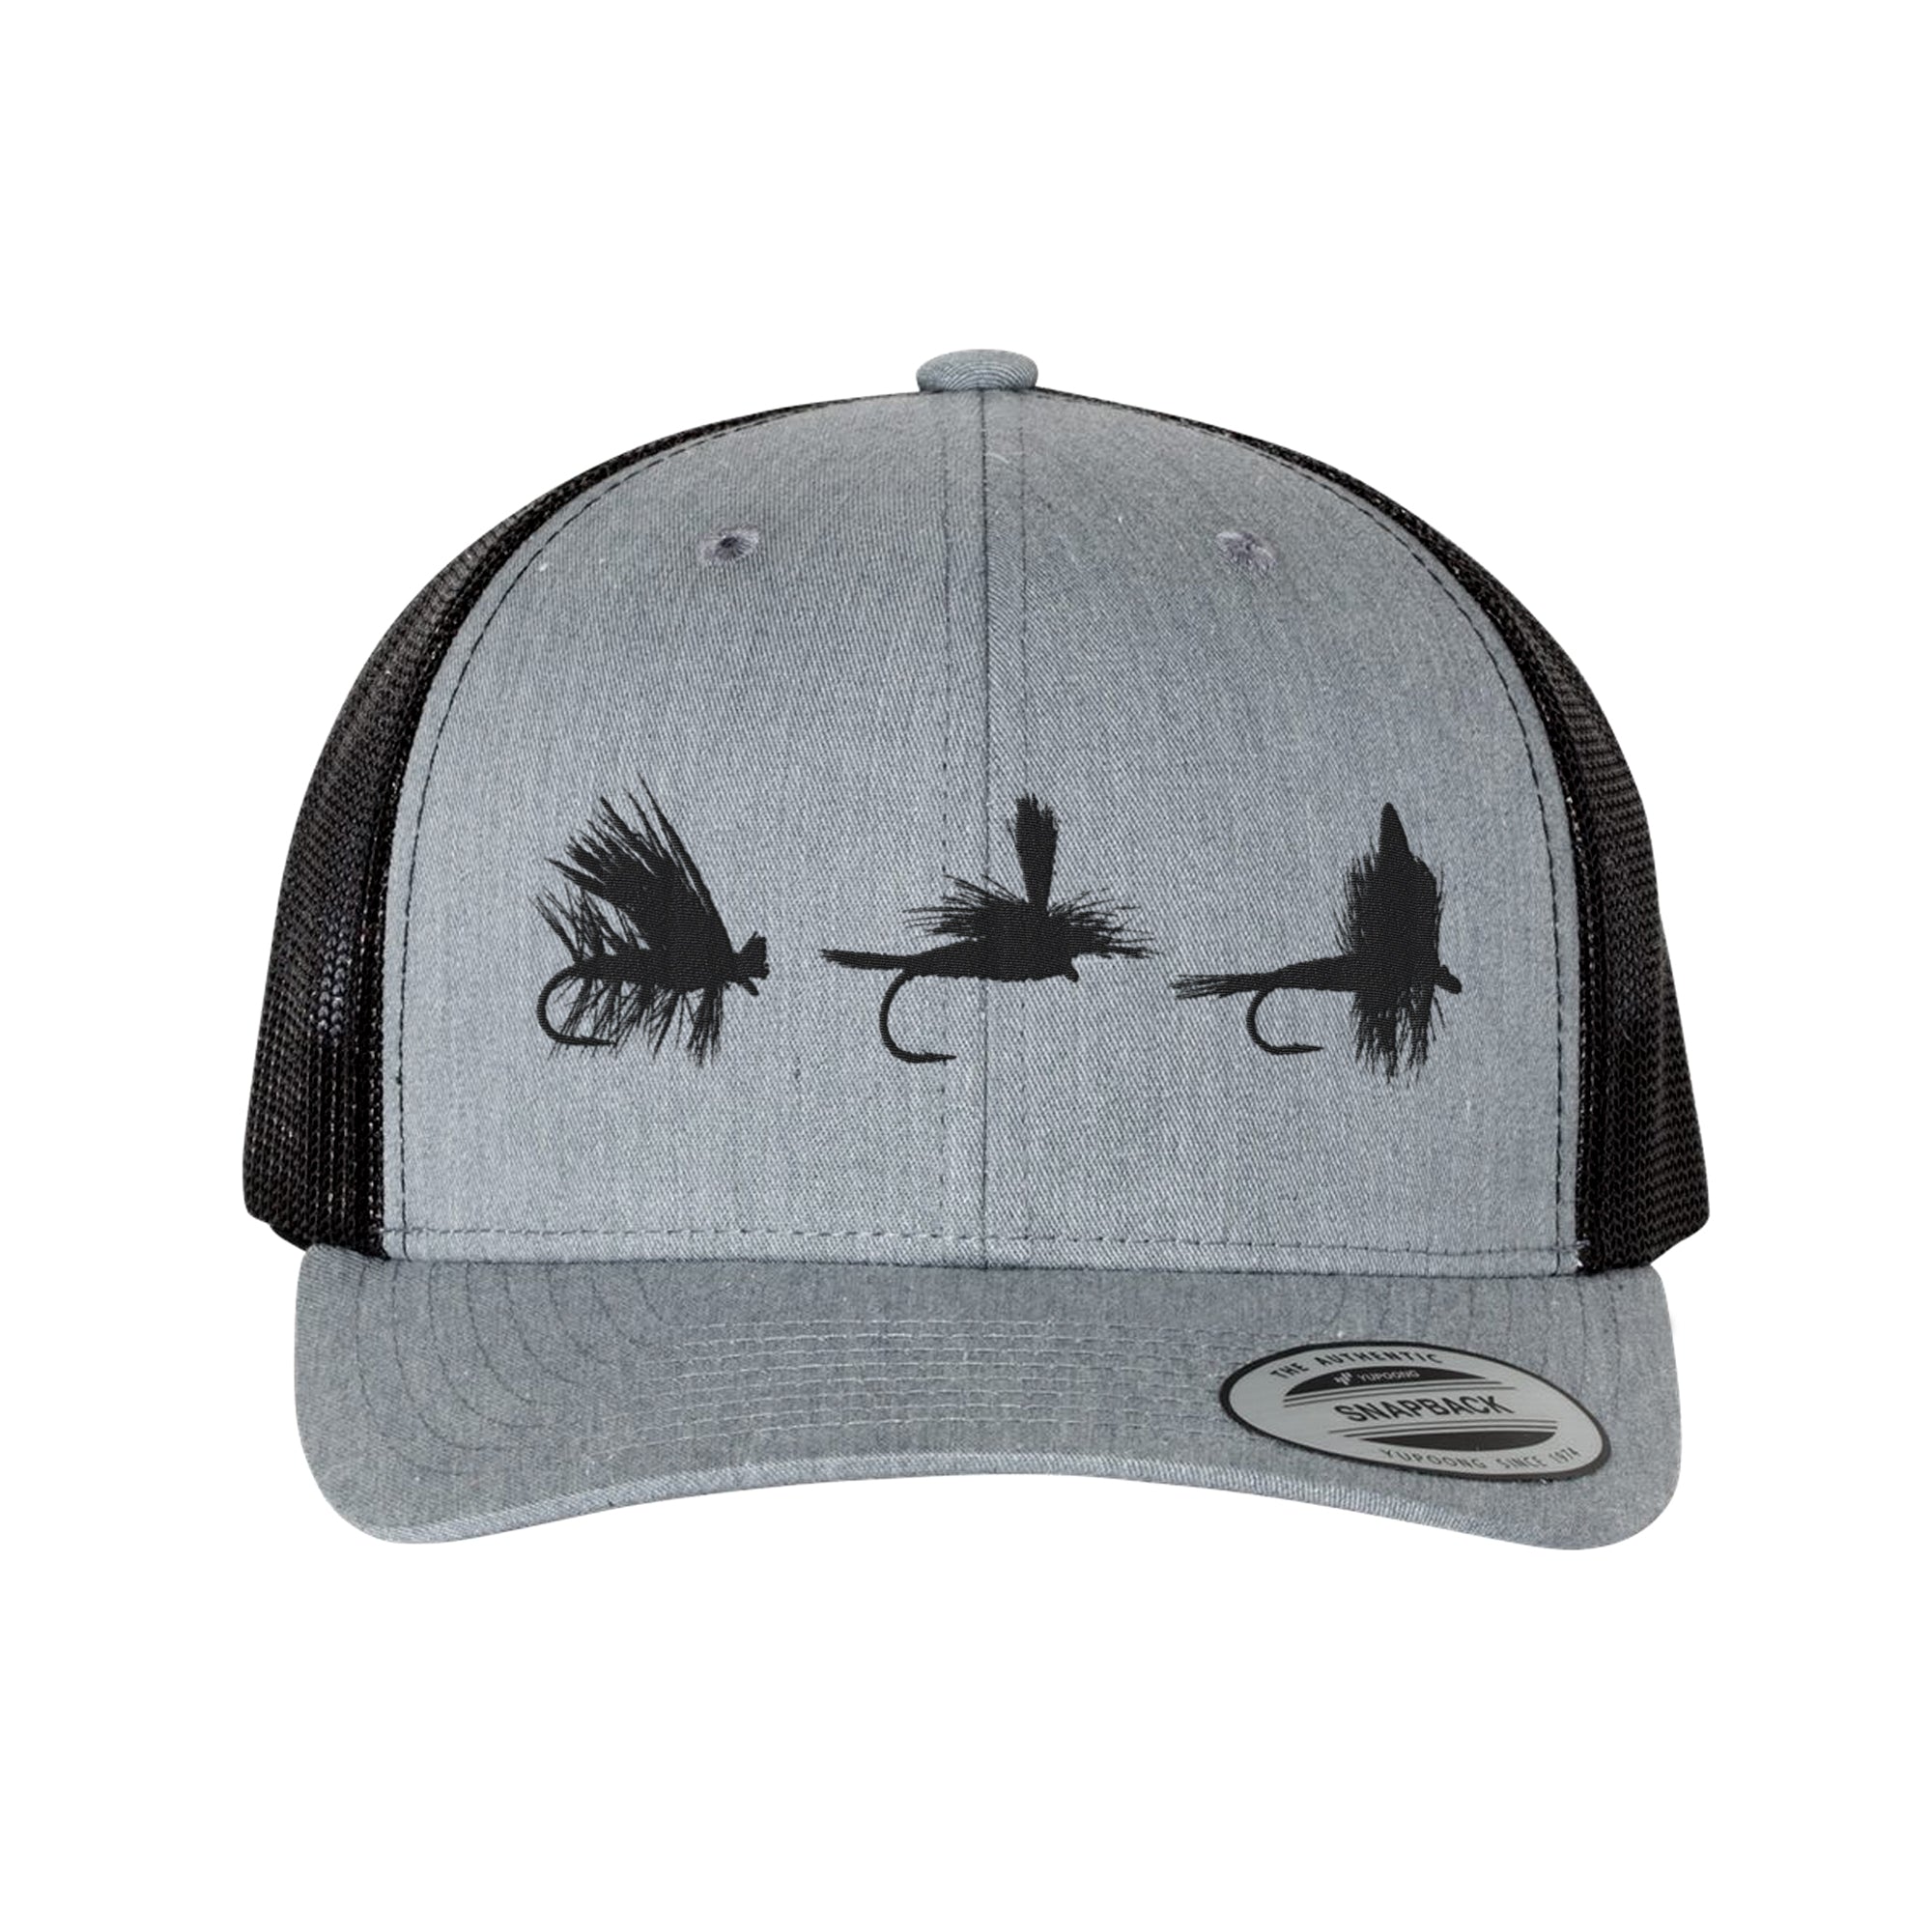 Fly Fishing Flies Trucker Hat